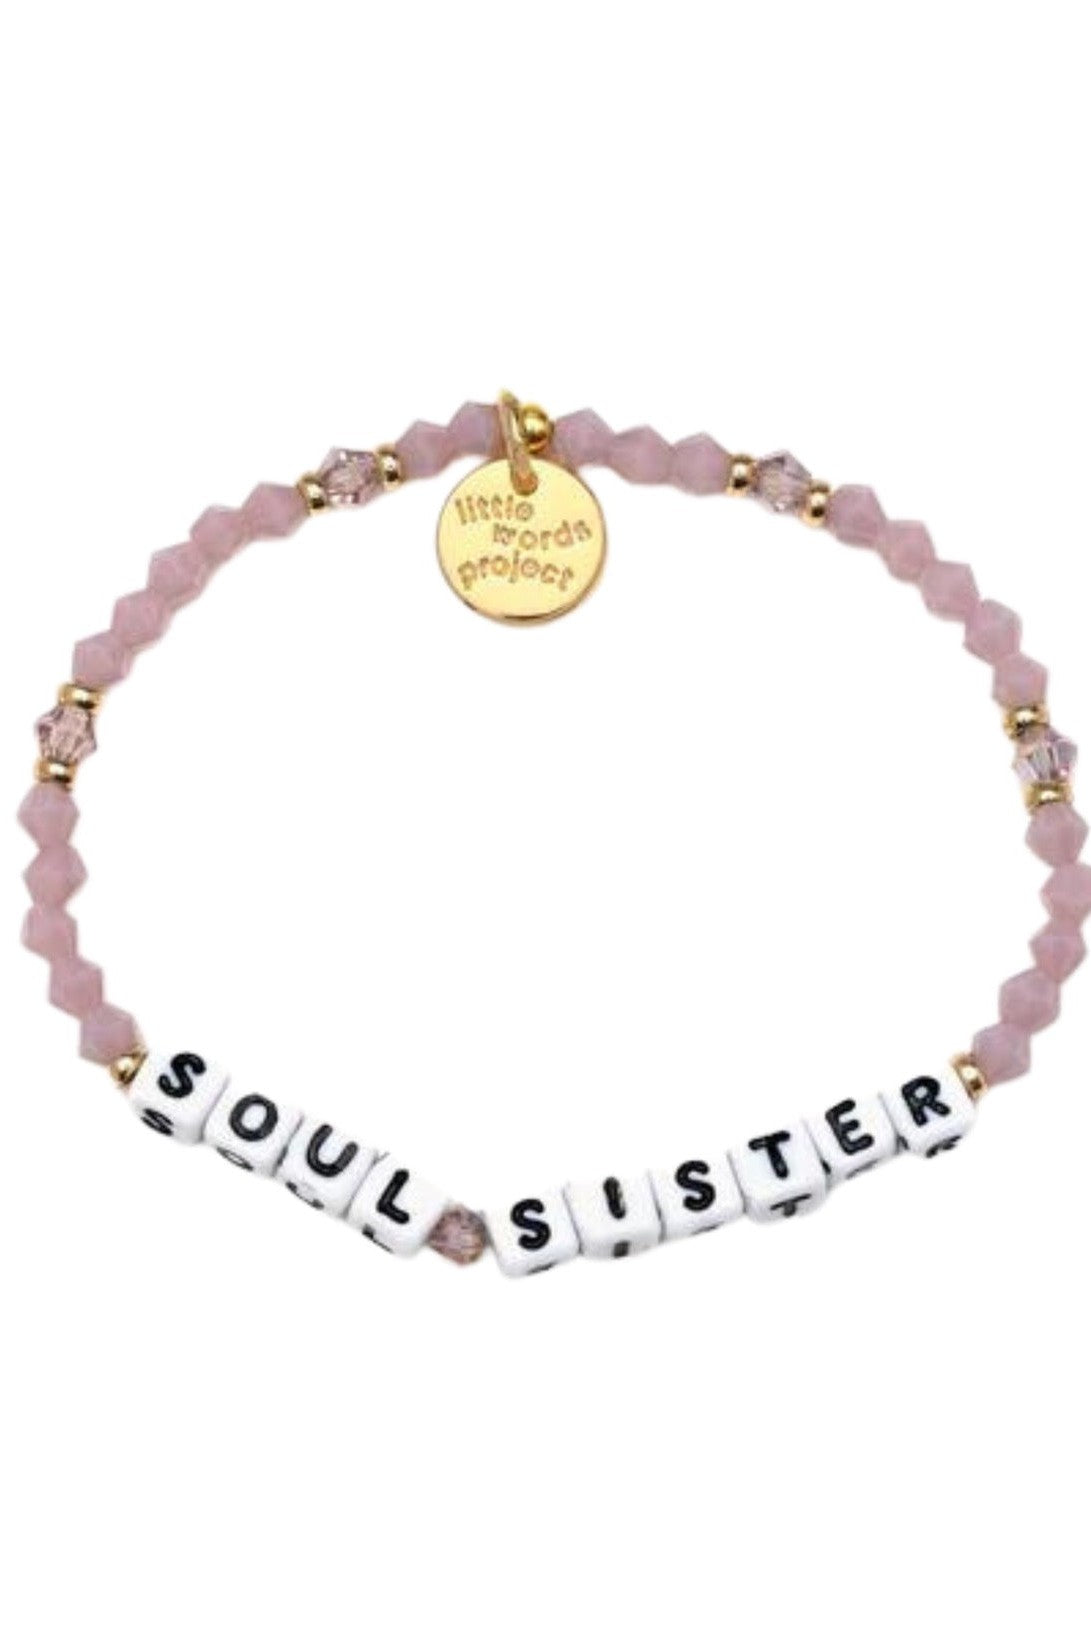 Soul Sister Bead Bracelet- Little Words Project